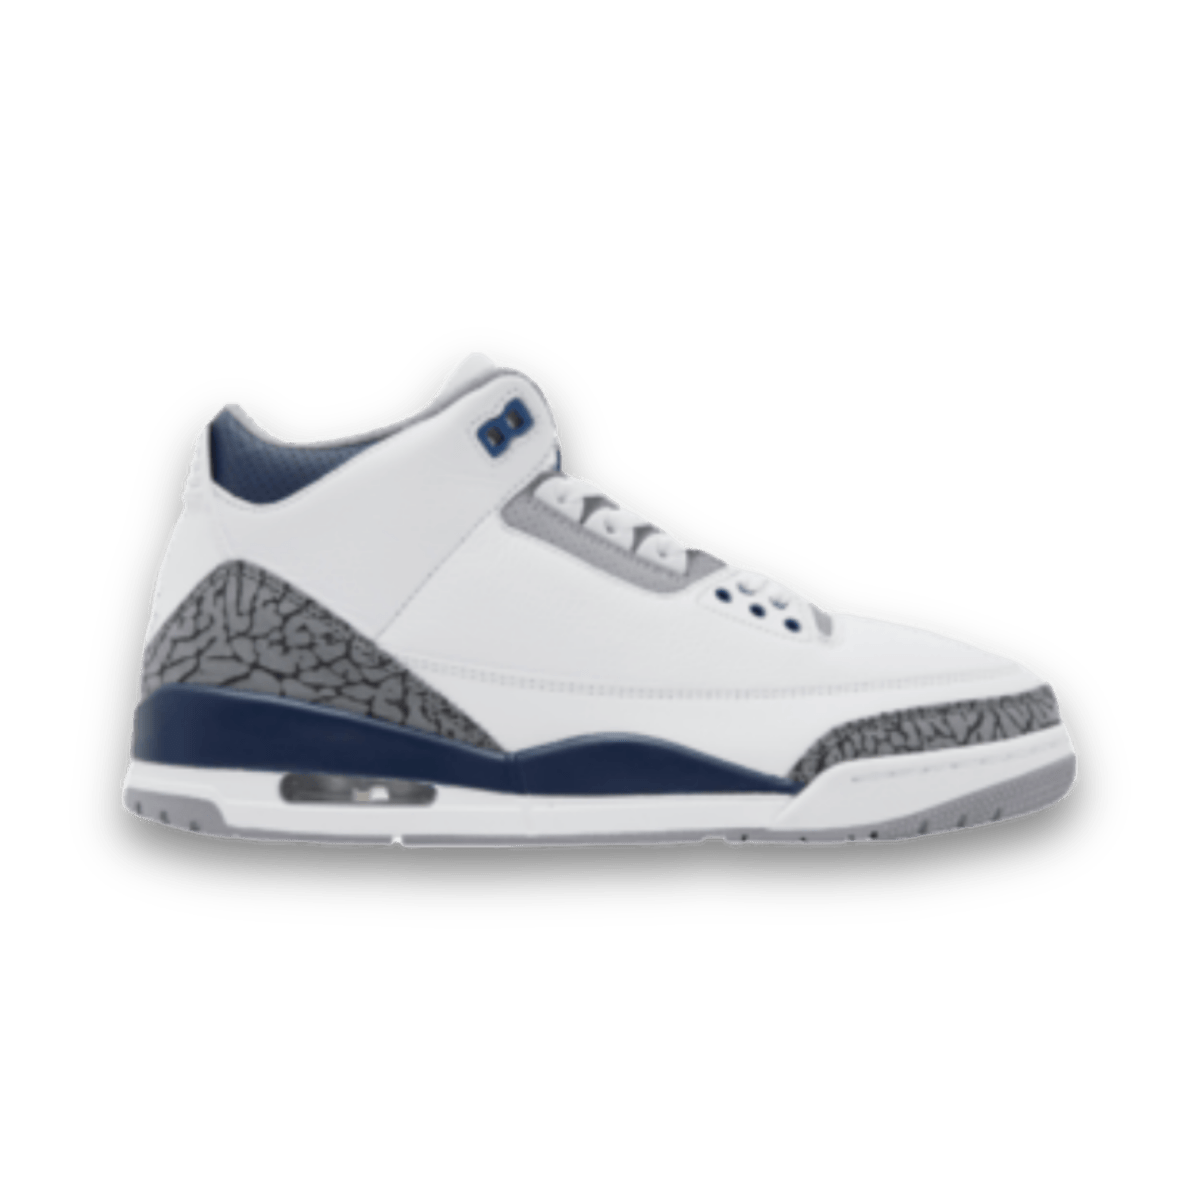 Air Jordan 3 Retro 'Midnight Navy' - Grade School - Mid Sneaker - Jawns on Fire Sneakers & Streetwear